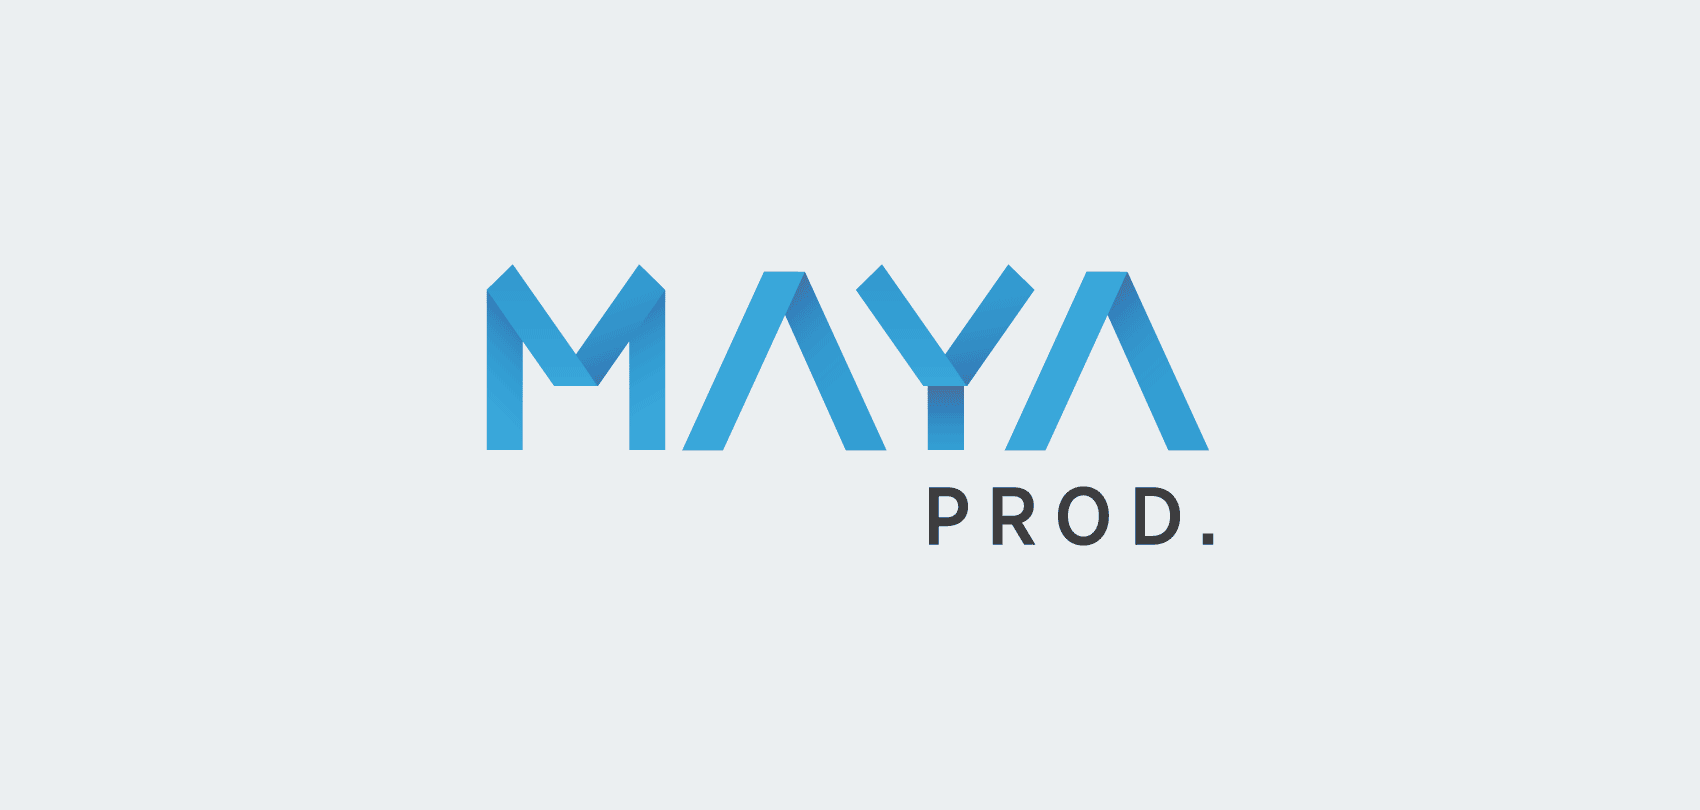 Logo MAYA prod